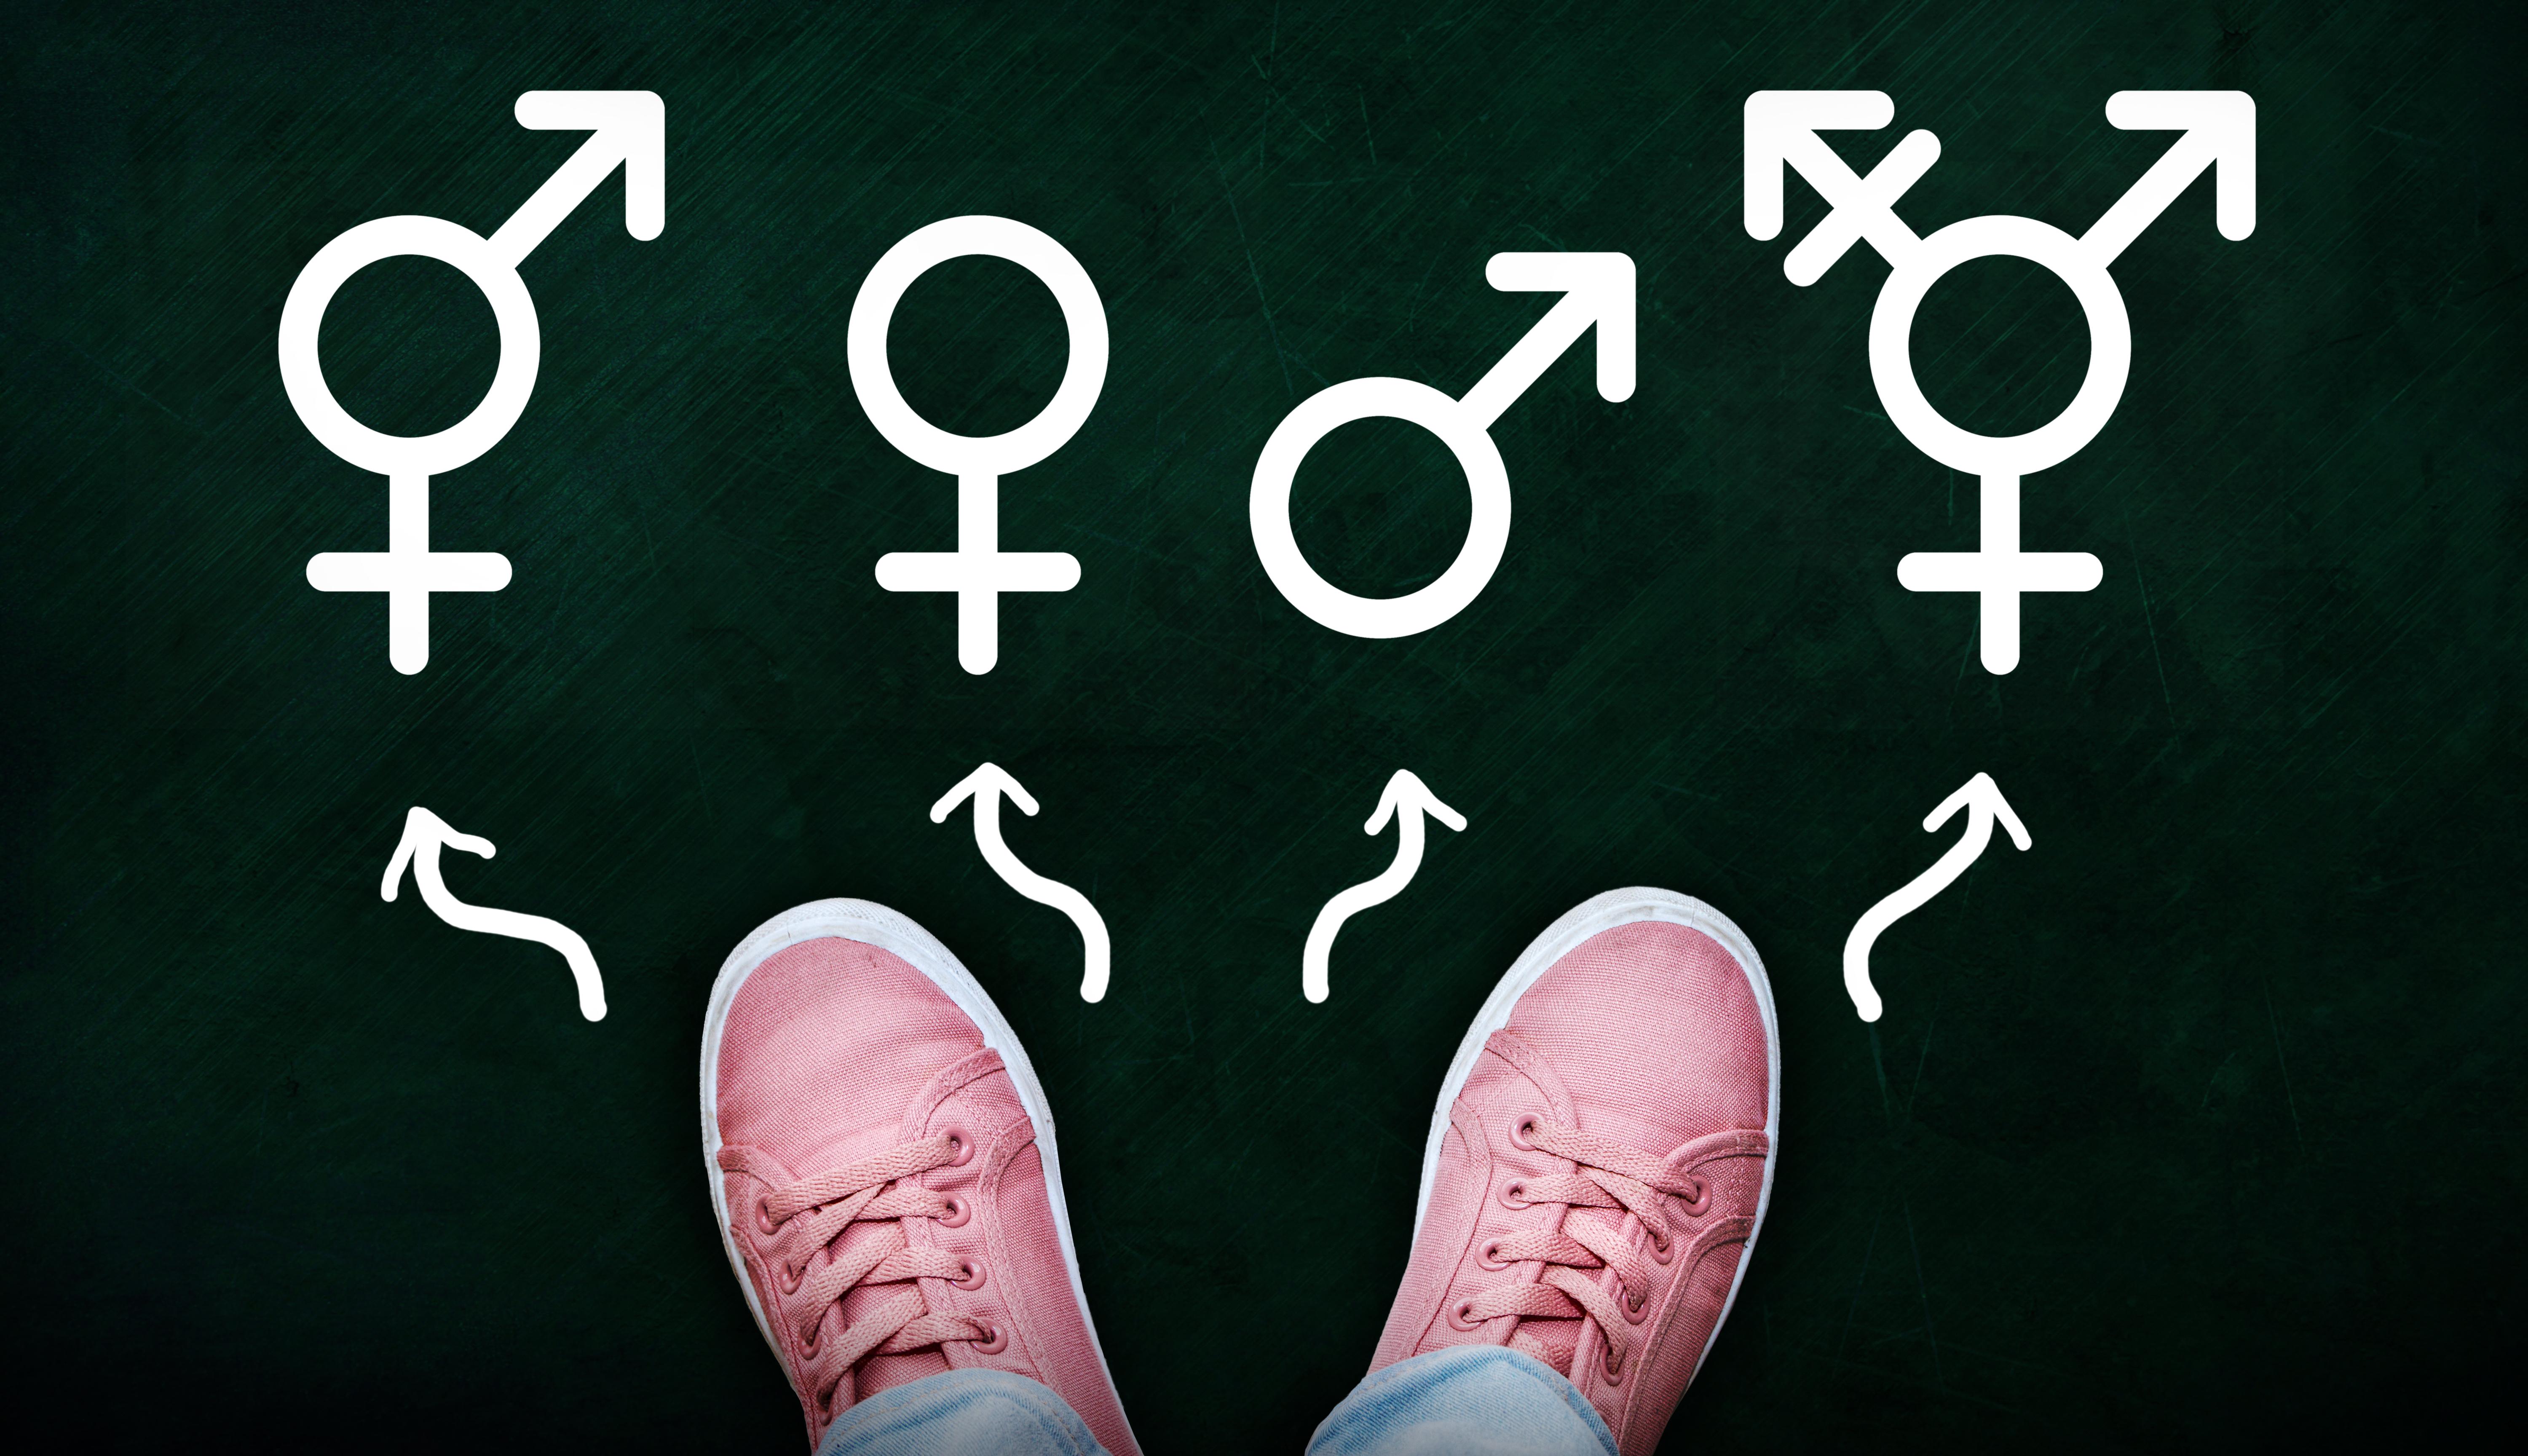 Вот что вам нужно знать об этих терминах гендерной идентичности